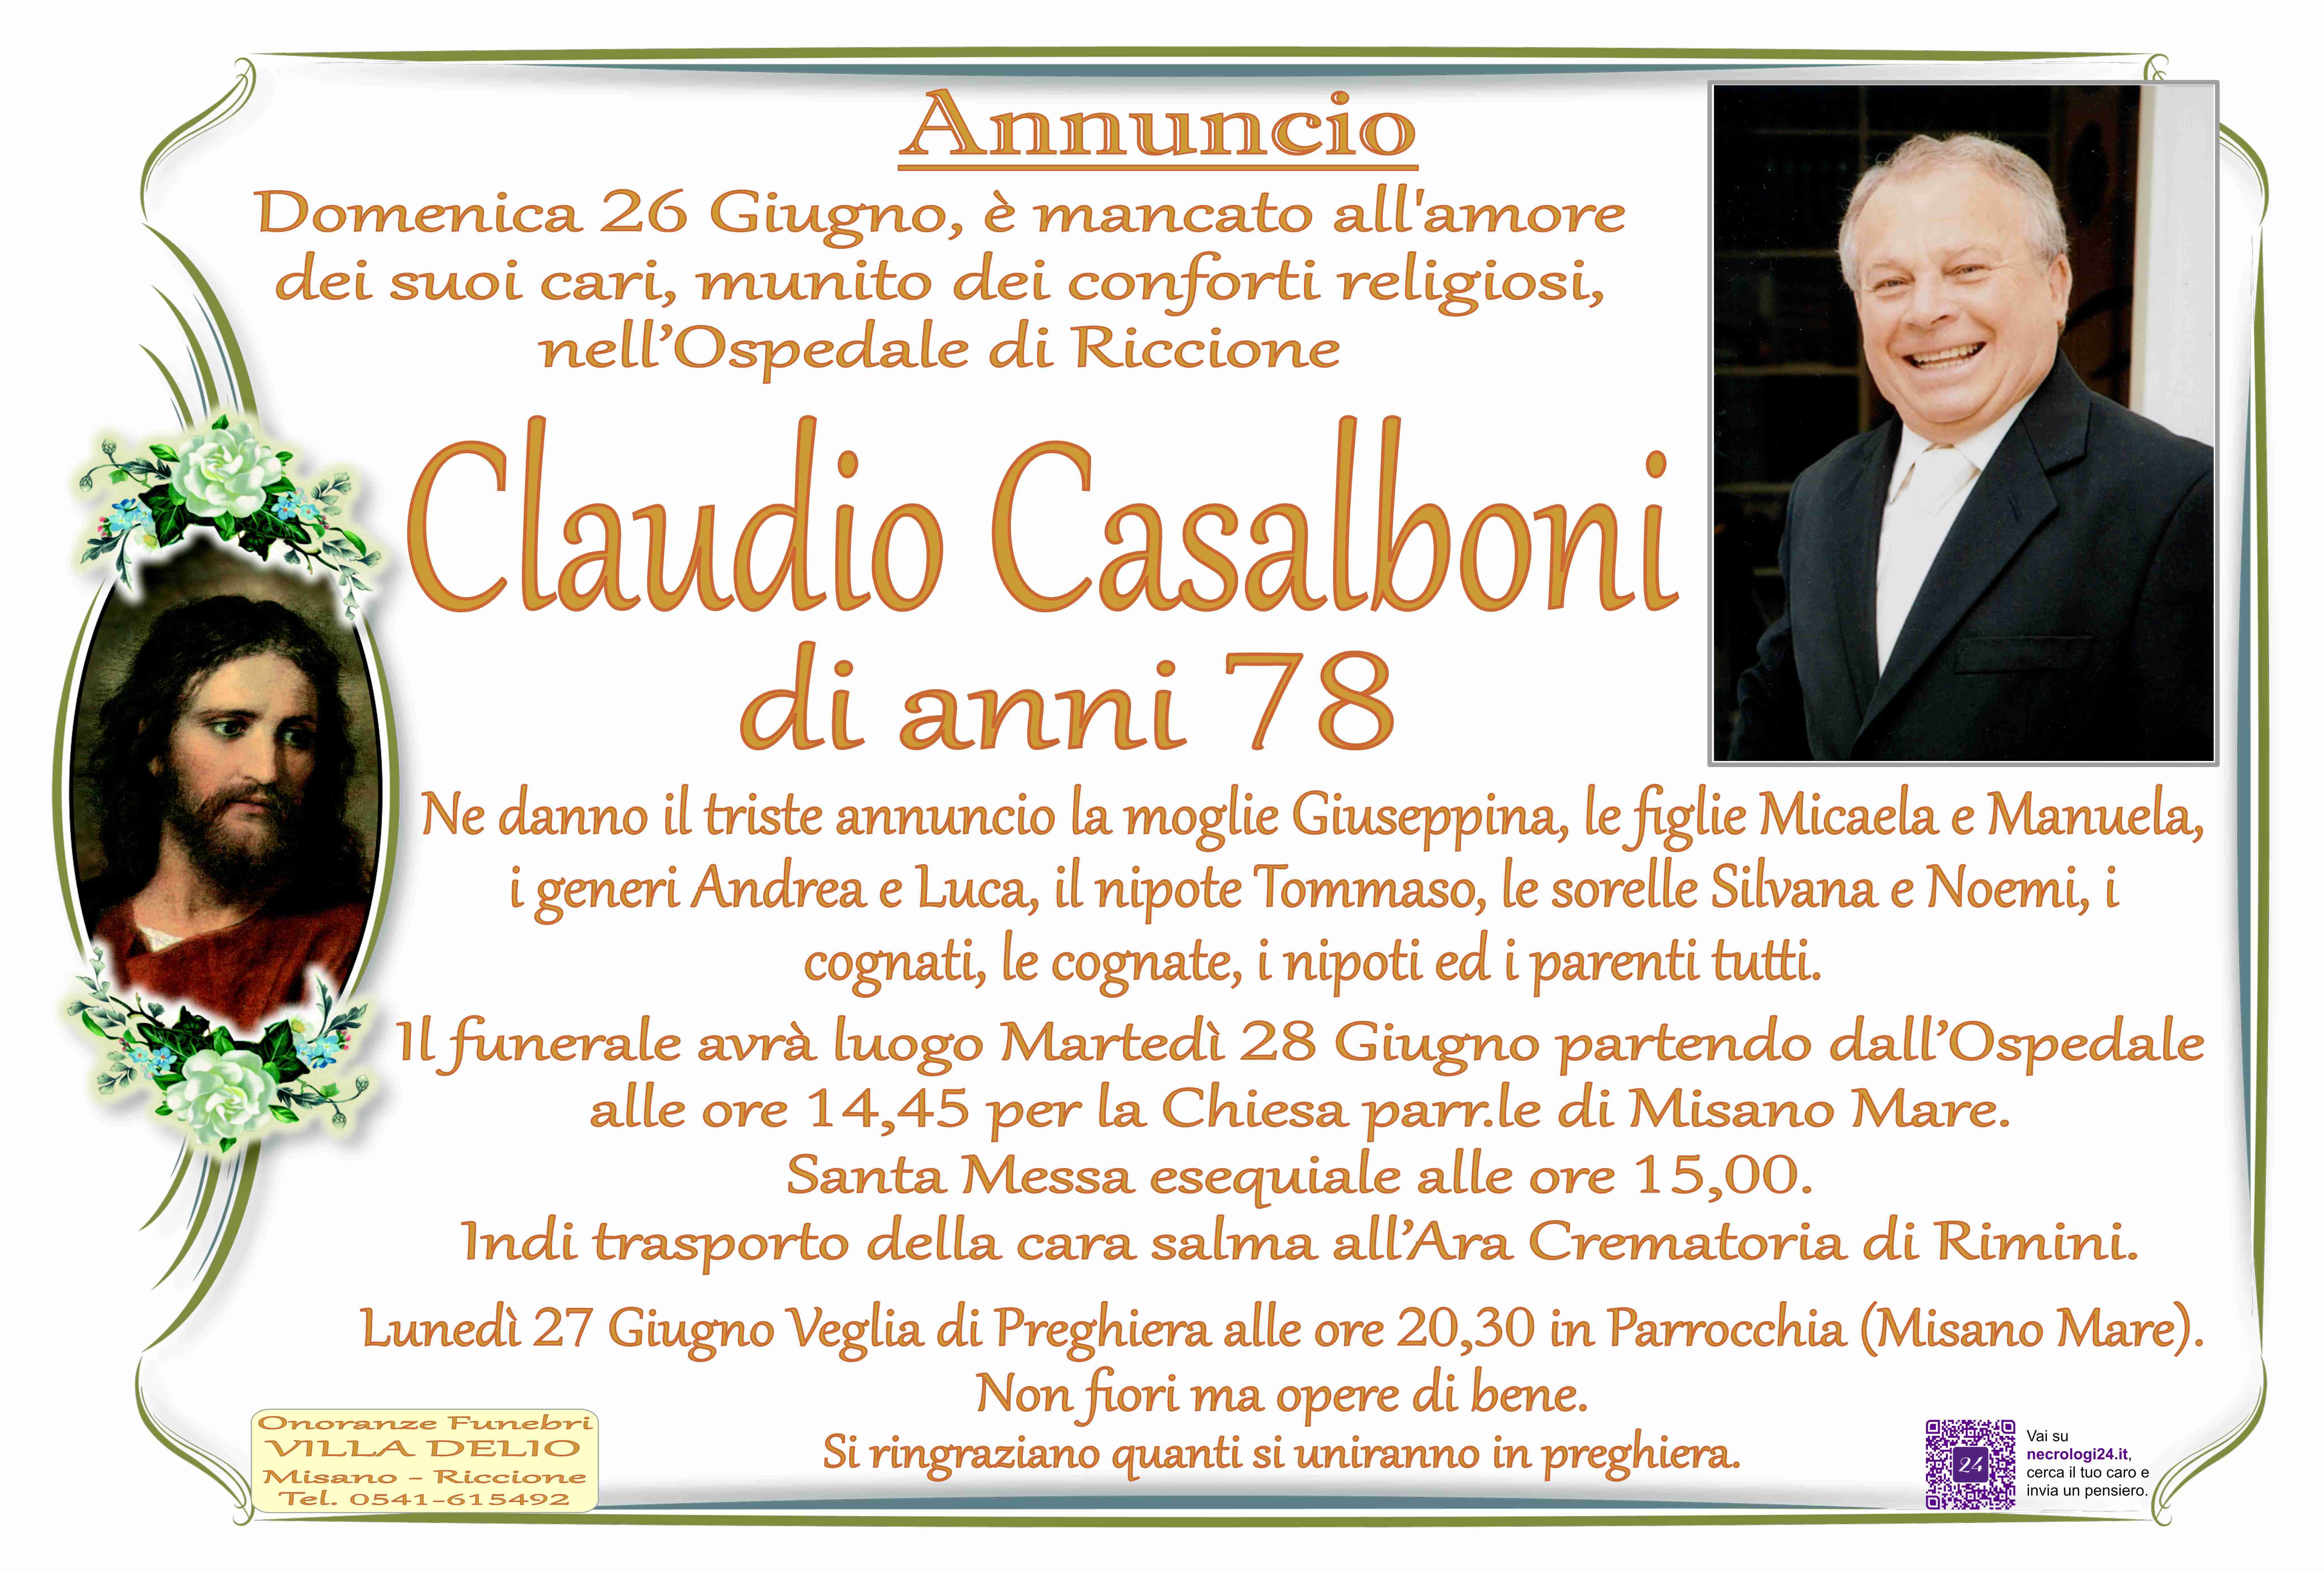 Claudio Casalboni